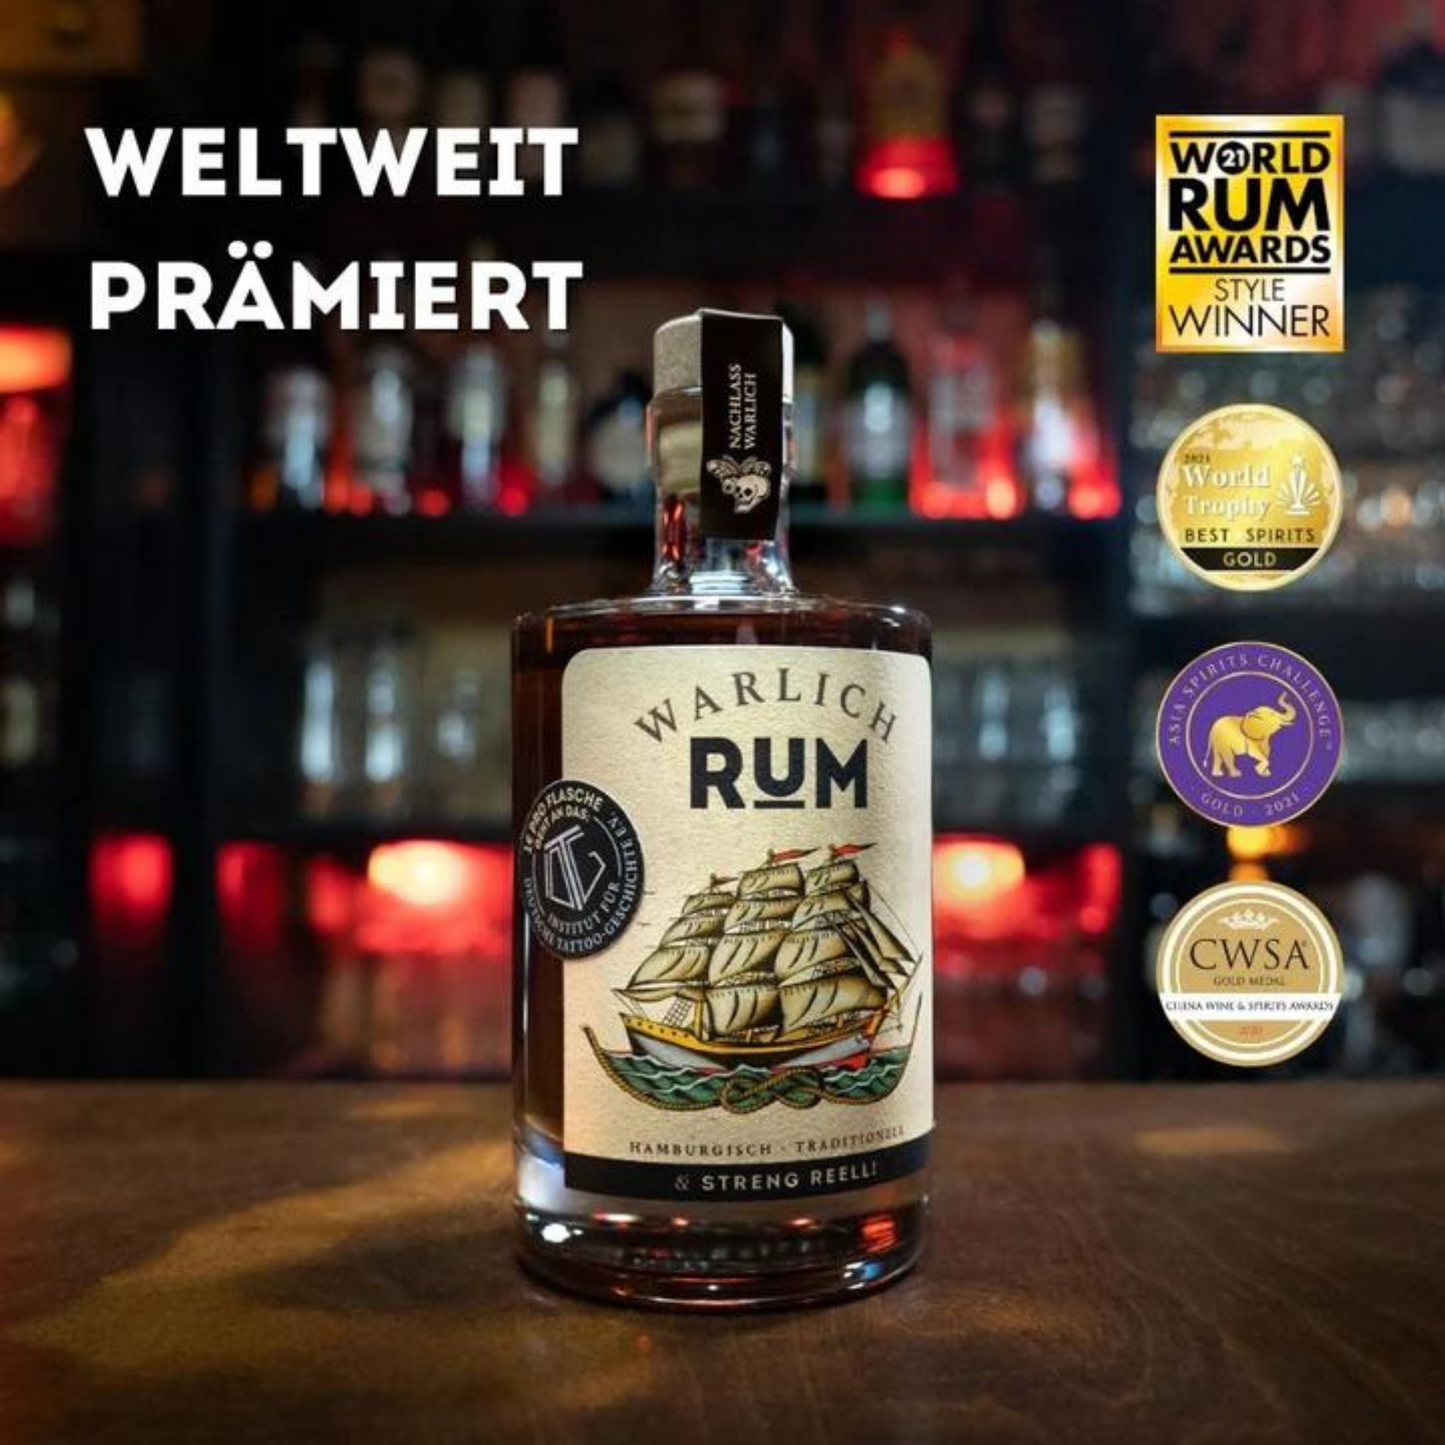 WARLICH Rum 0,5 L